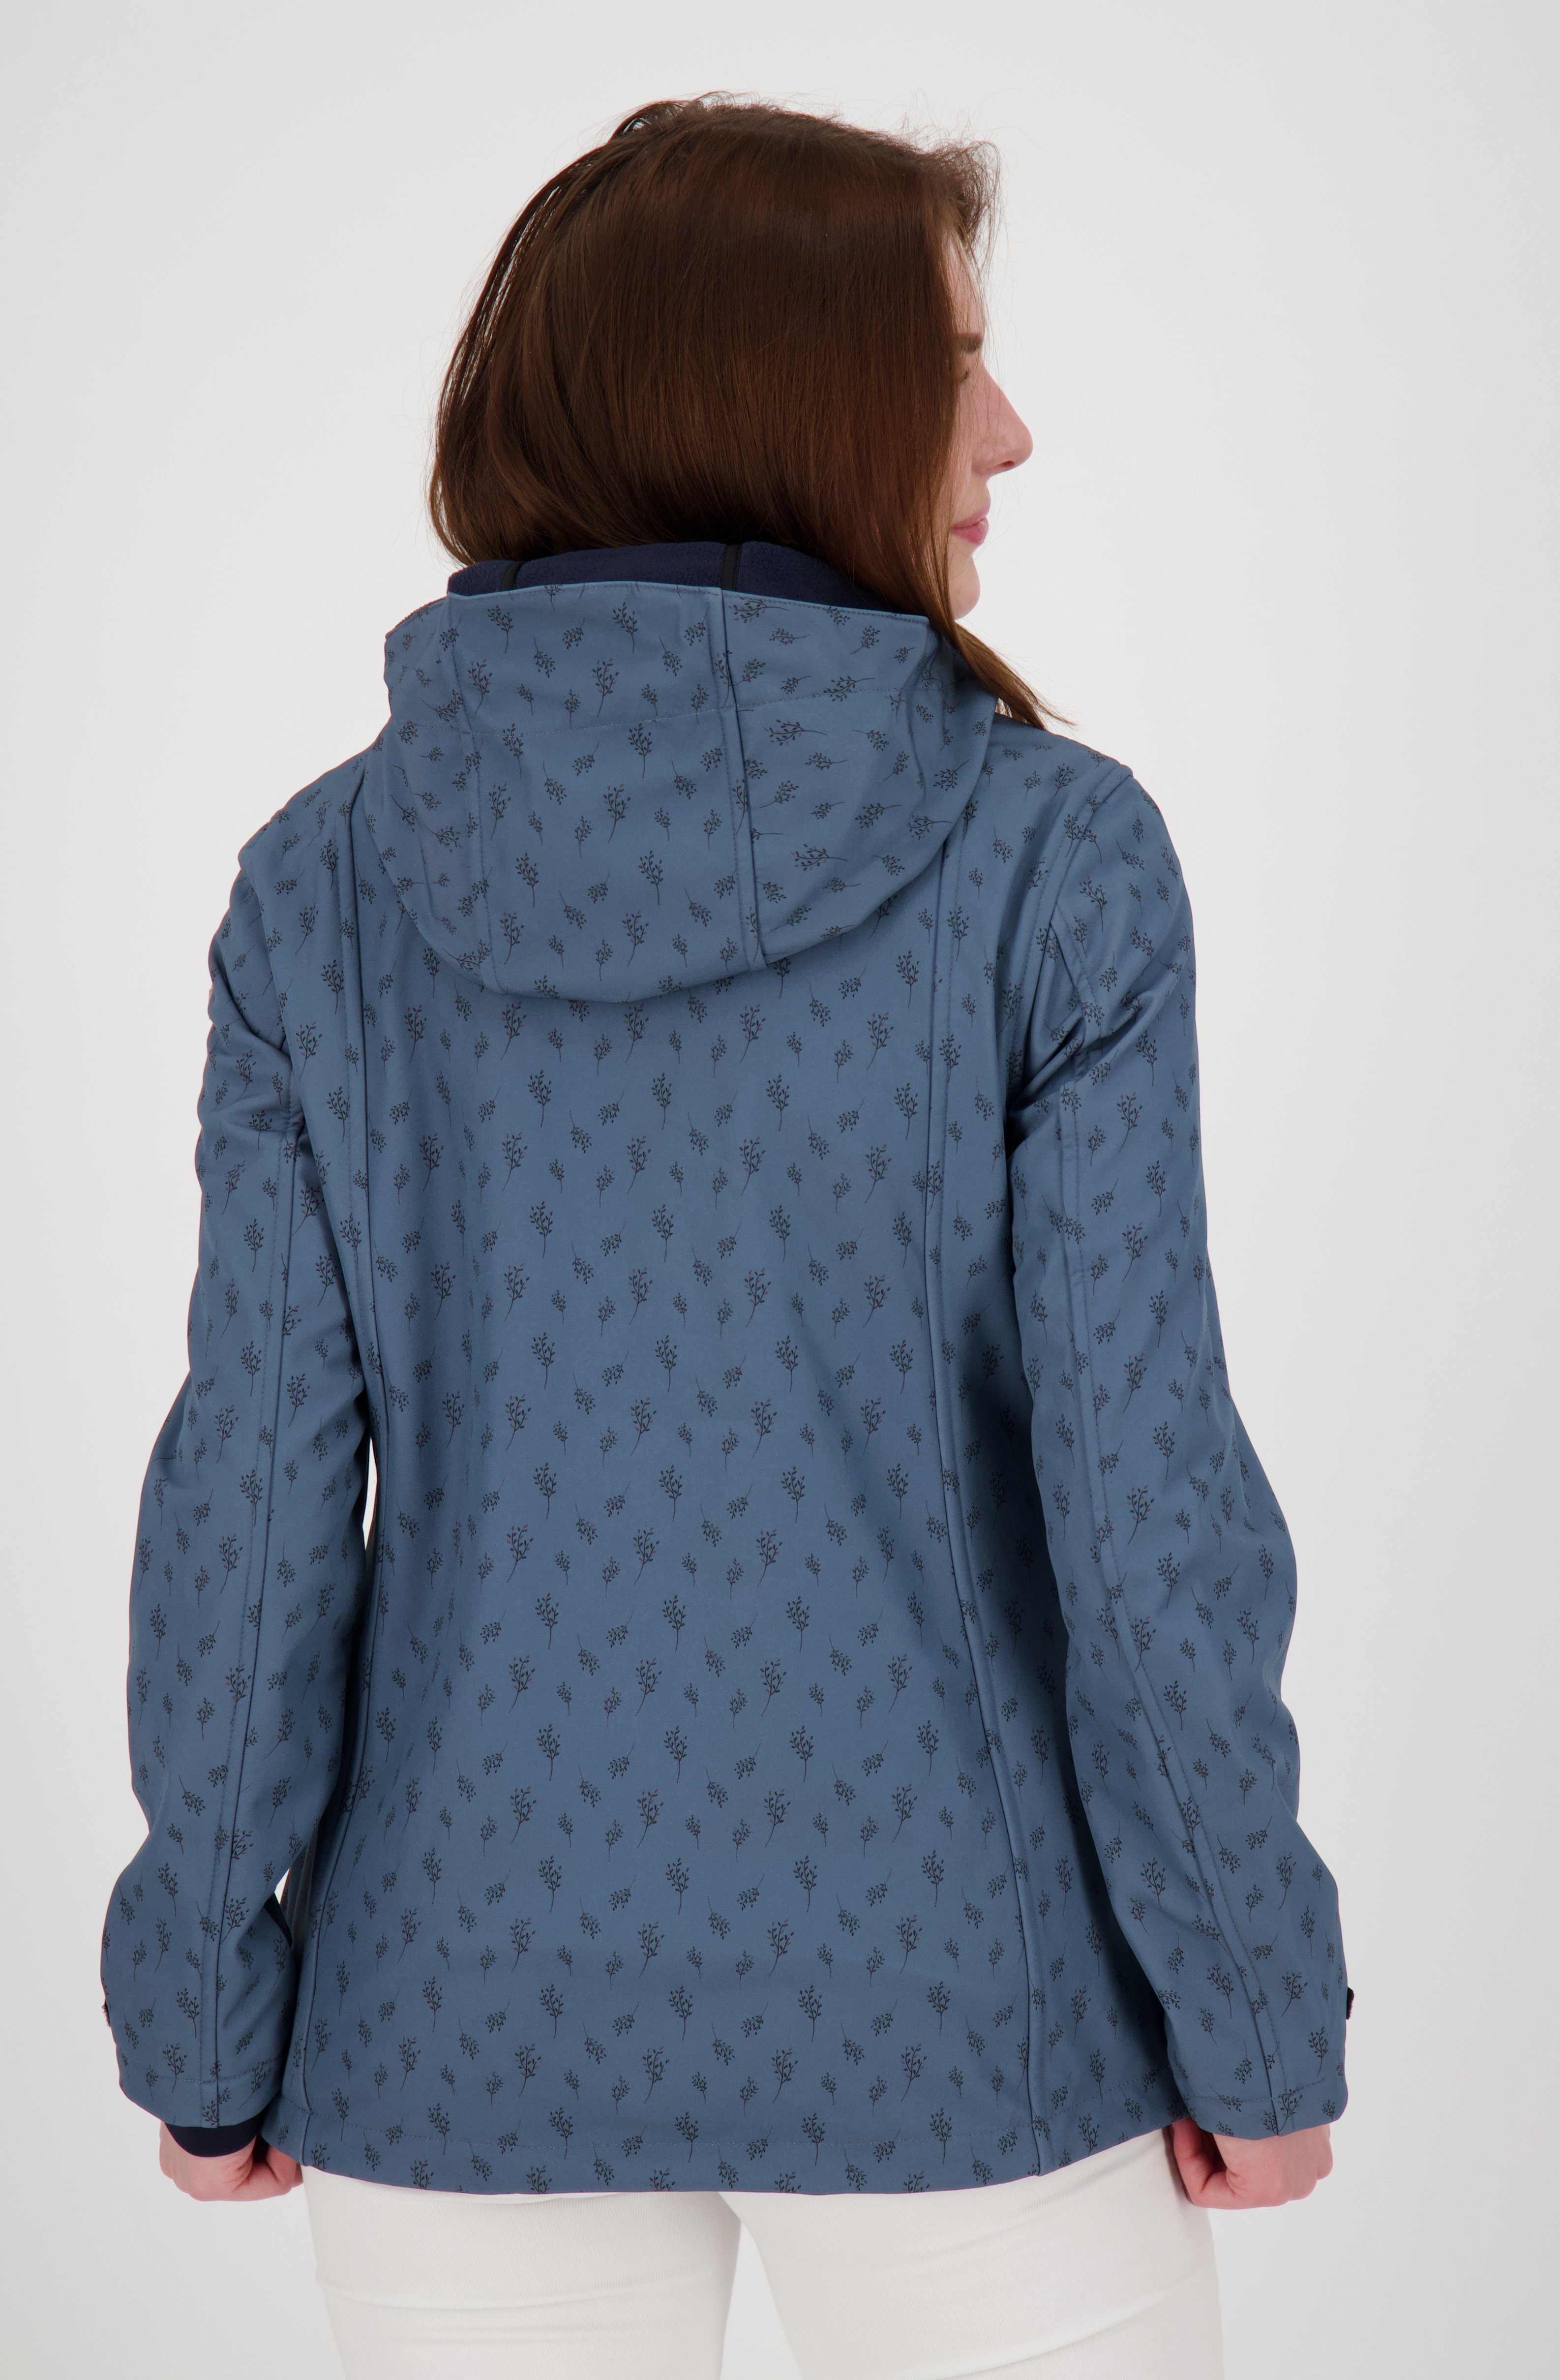 DEPROC Active Softshelljacke SHELBY X WOMEN CS erhältlich mit in blue orion Großen abnehmbarer Kapuze, Größen auch